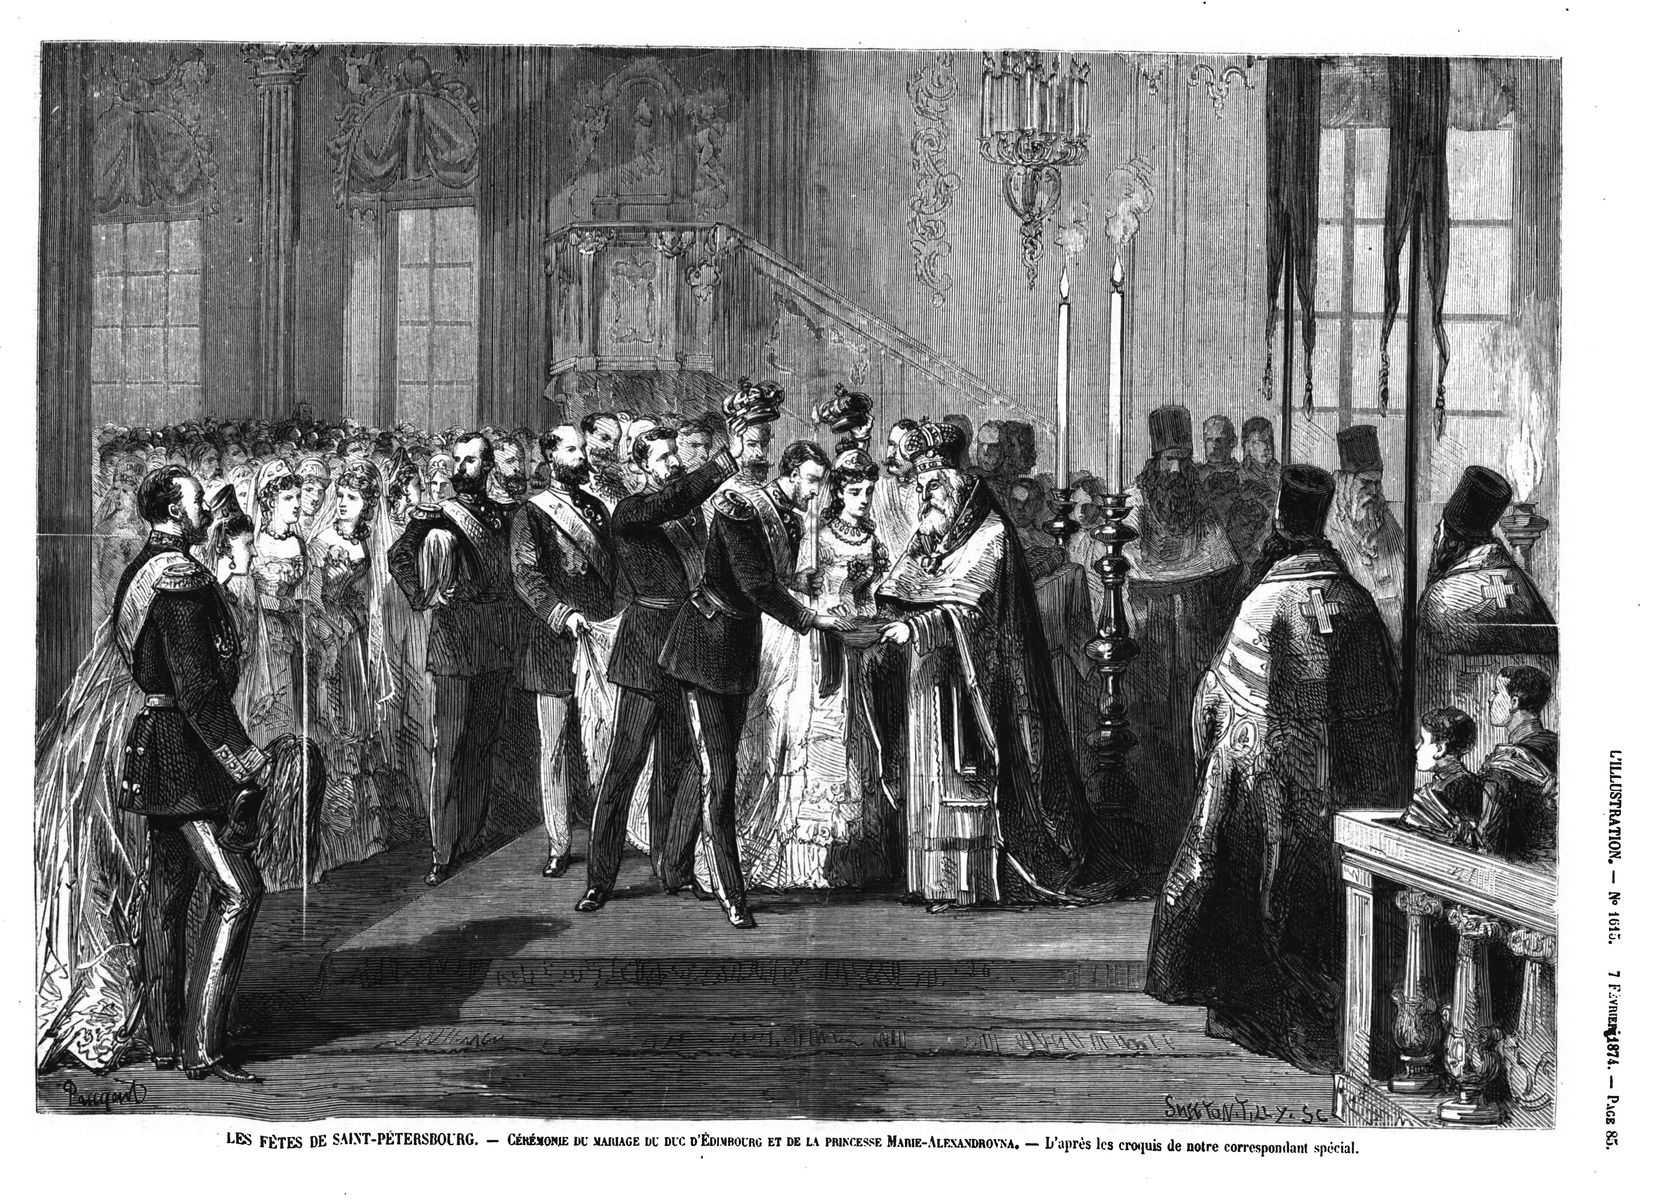 Les fêtes de Saint-Pétersbourg Cérémonie du mariage du duc d’Edimbourg et de la princesse Alexandrovna. 1874